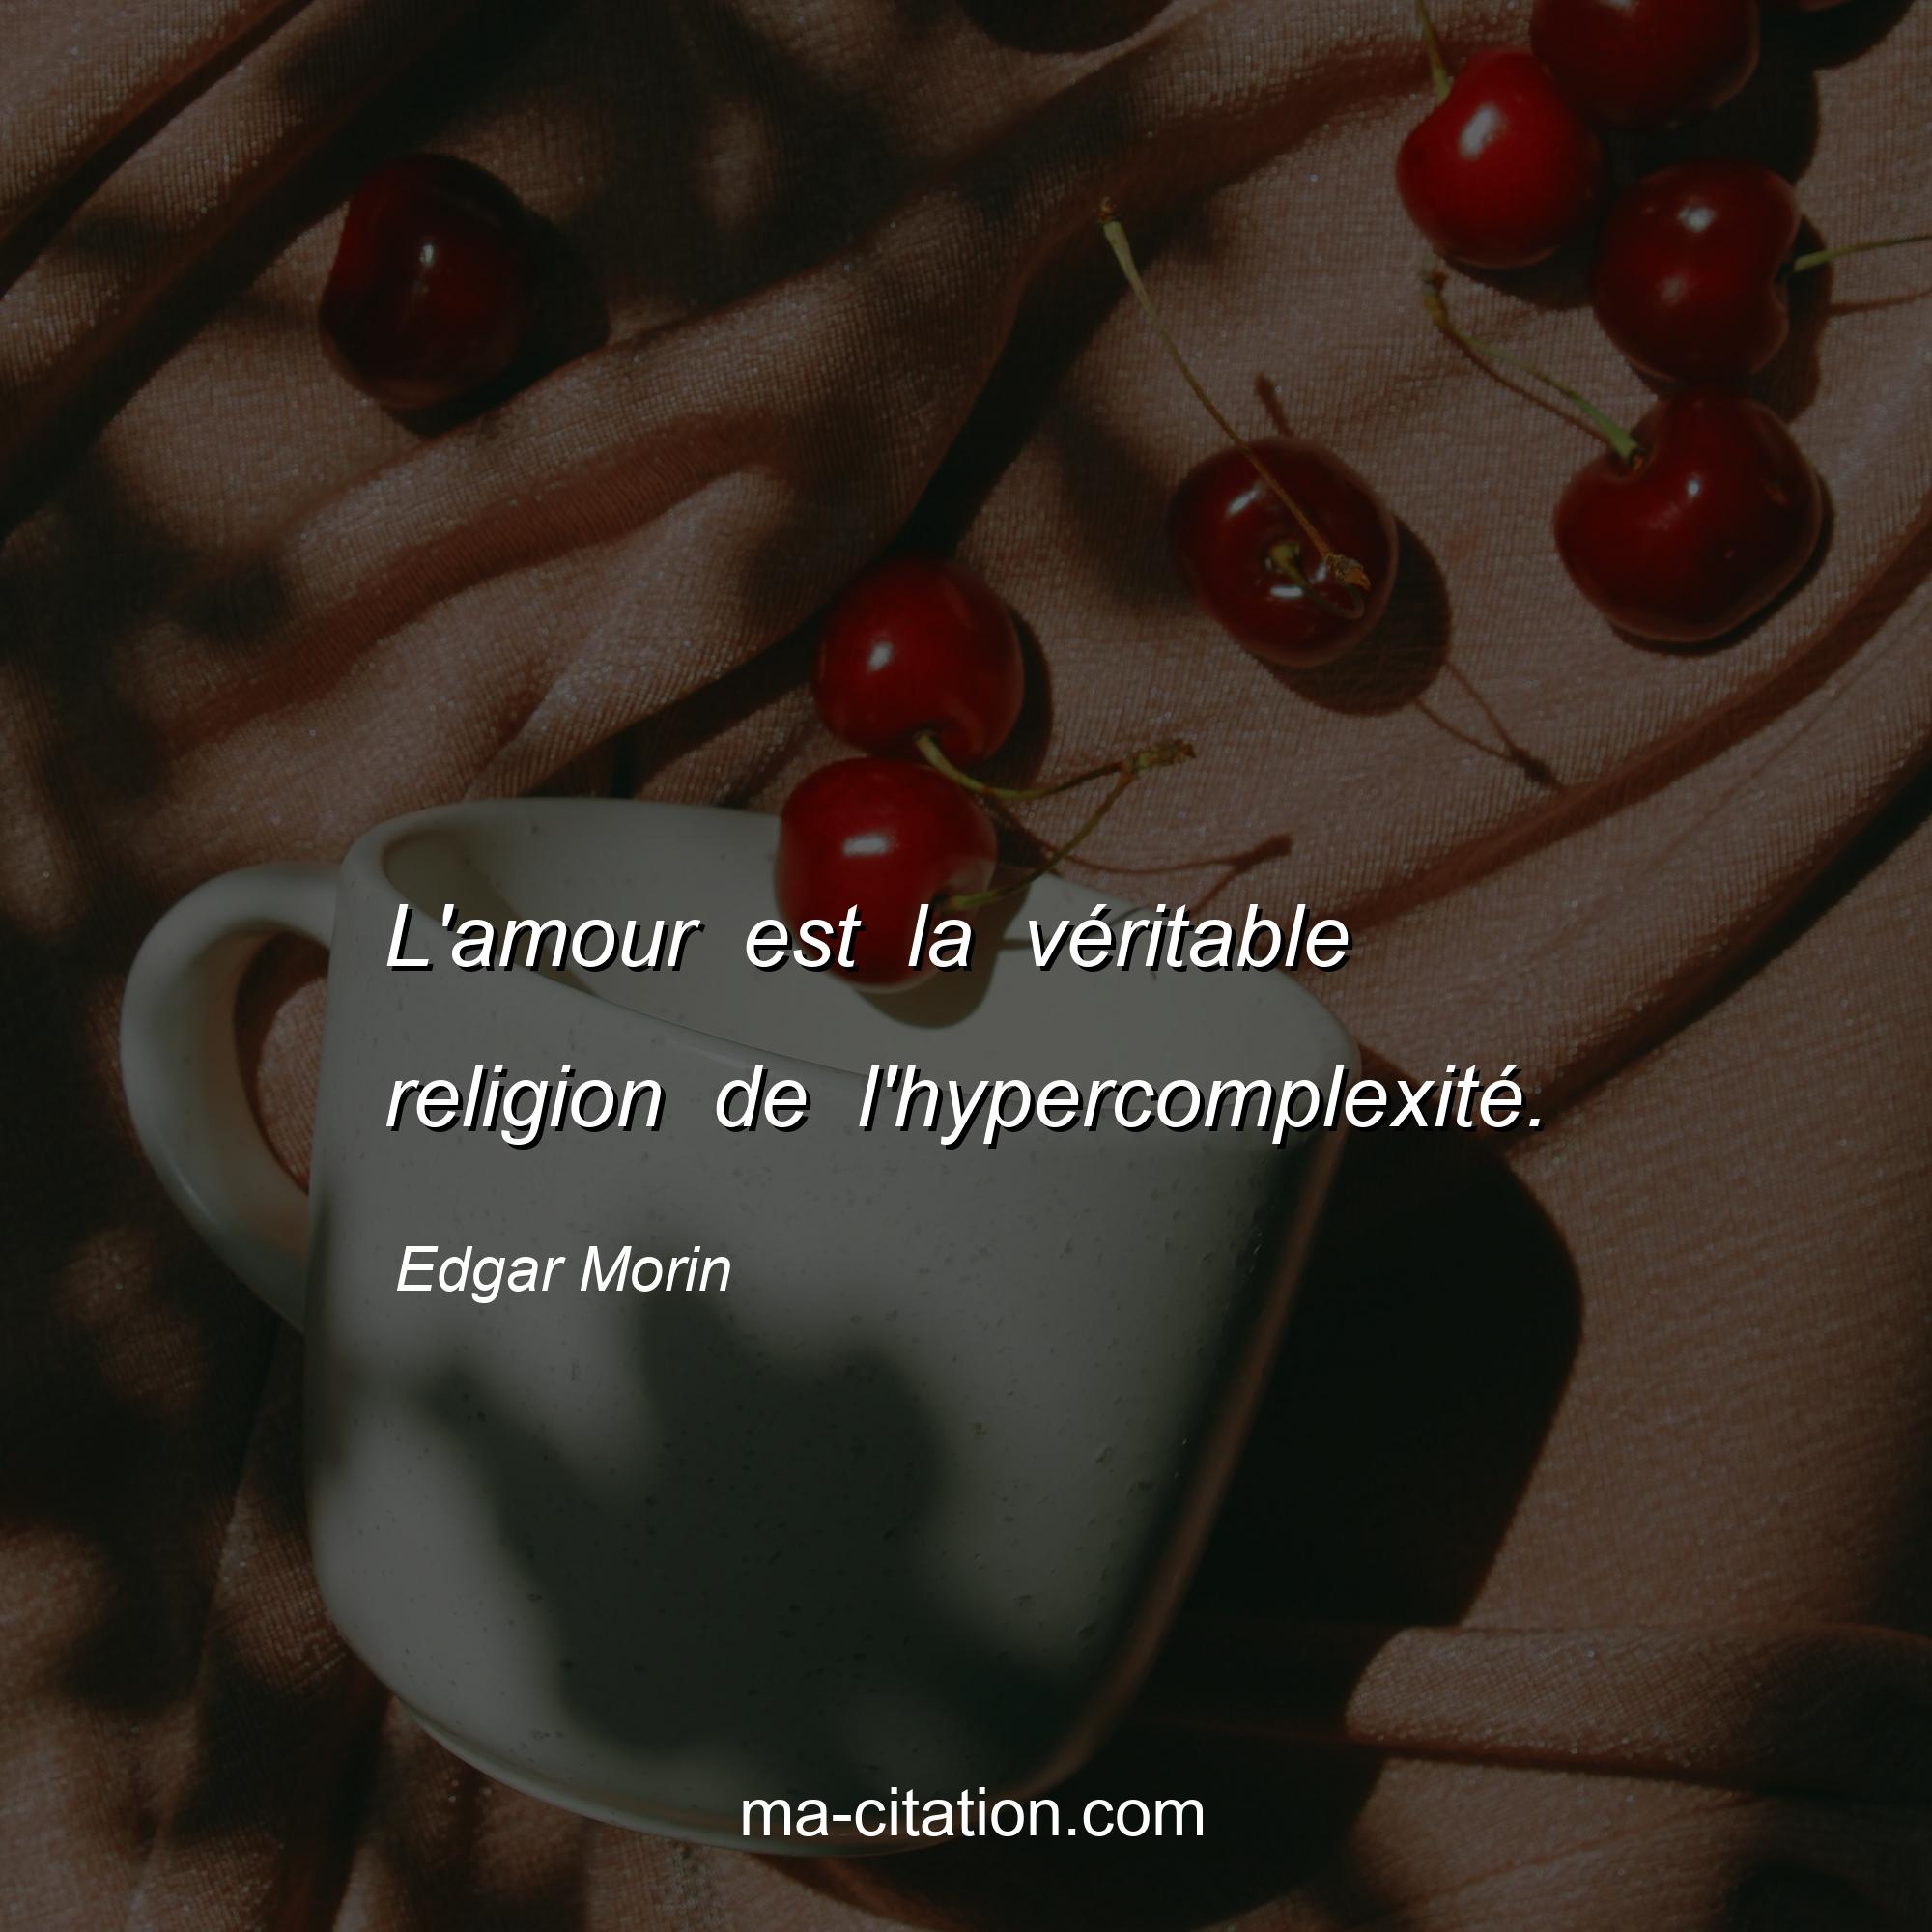 Edgar Morin : L'amour est la véritable religion de l'hypercomplexité.